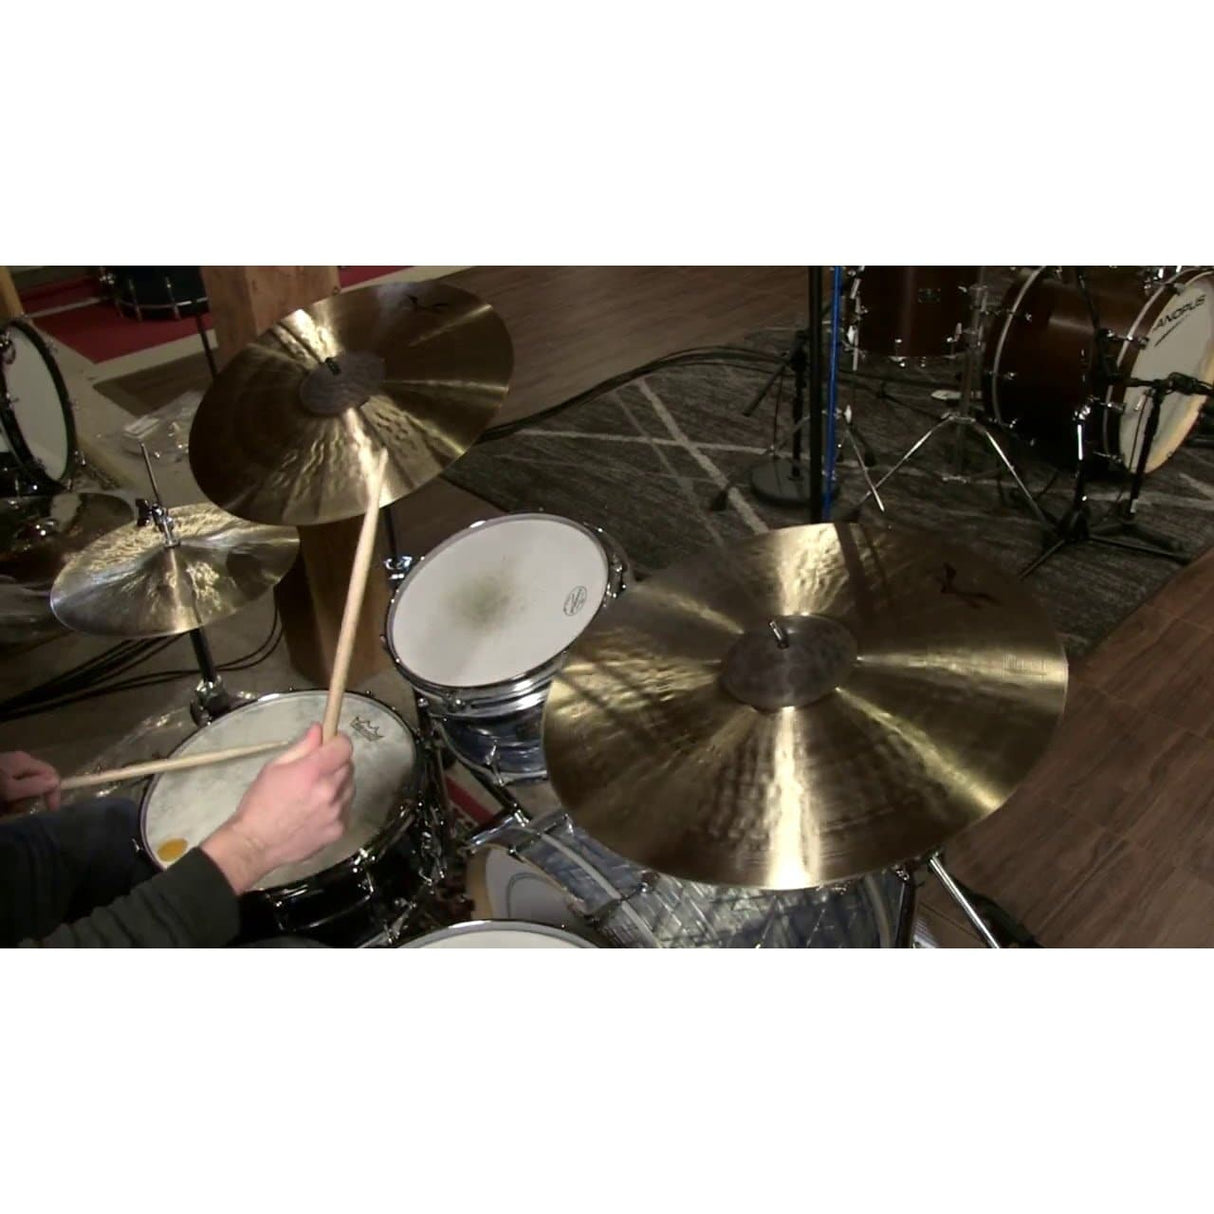 Sabian Prototype HHX Crash/Ride Cymbal 20" 1797 grams